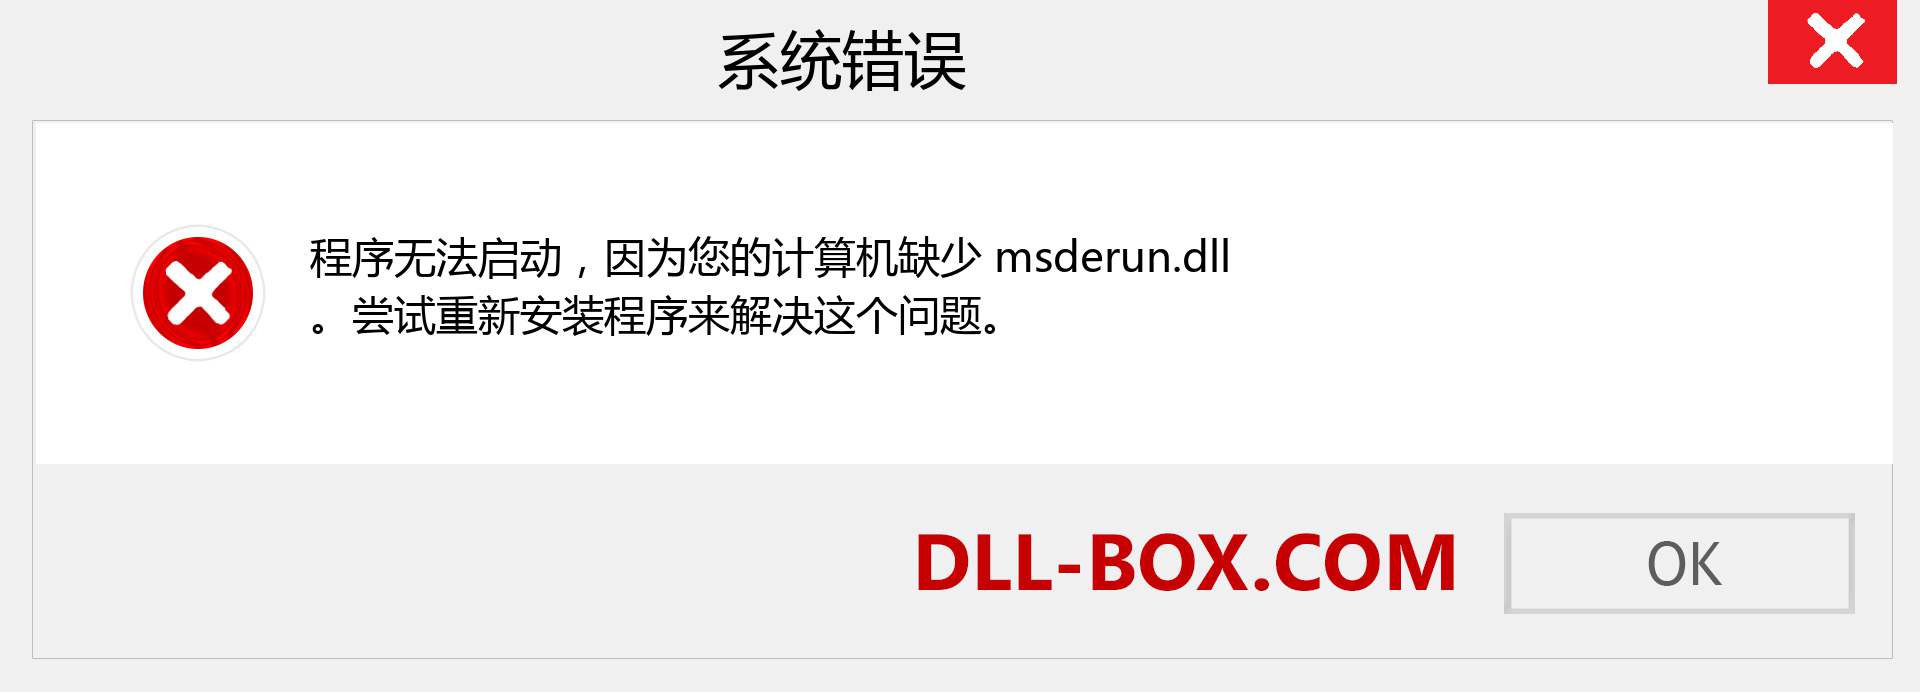 msderun.dll 文件丢失？。 适用于 Windows 7、8、10 的下载 - 修复 Windows、照片、图像上的 msderun dll 丢失错误